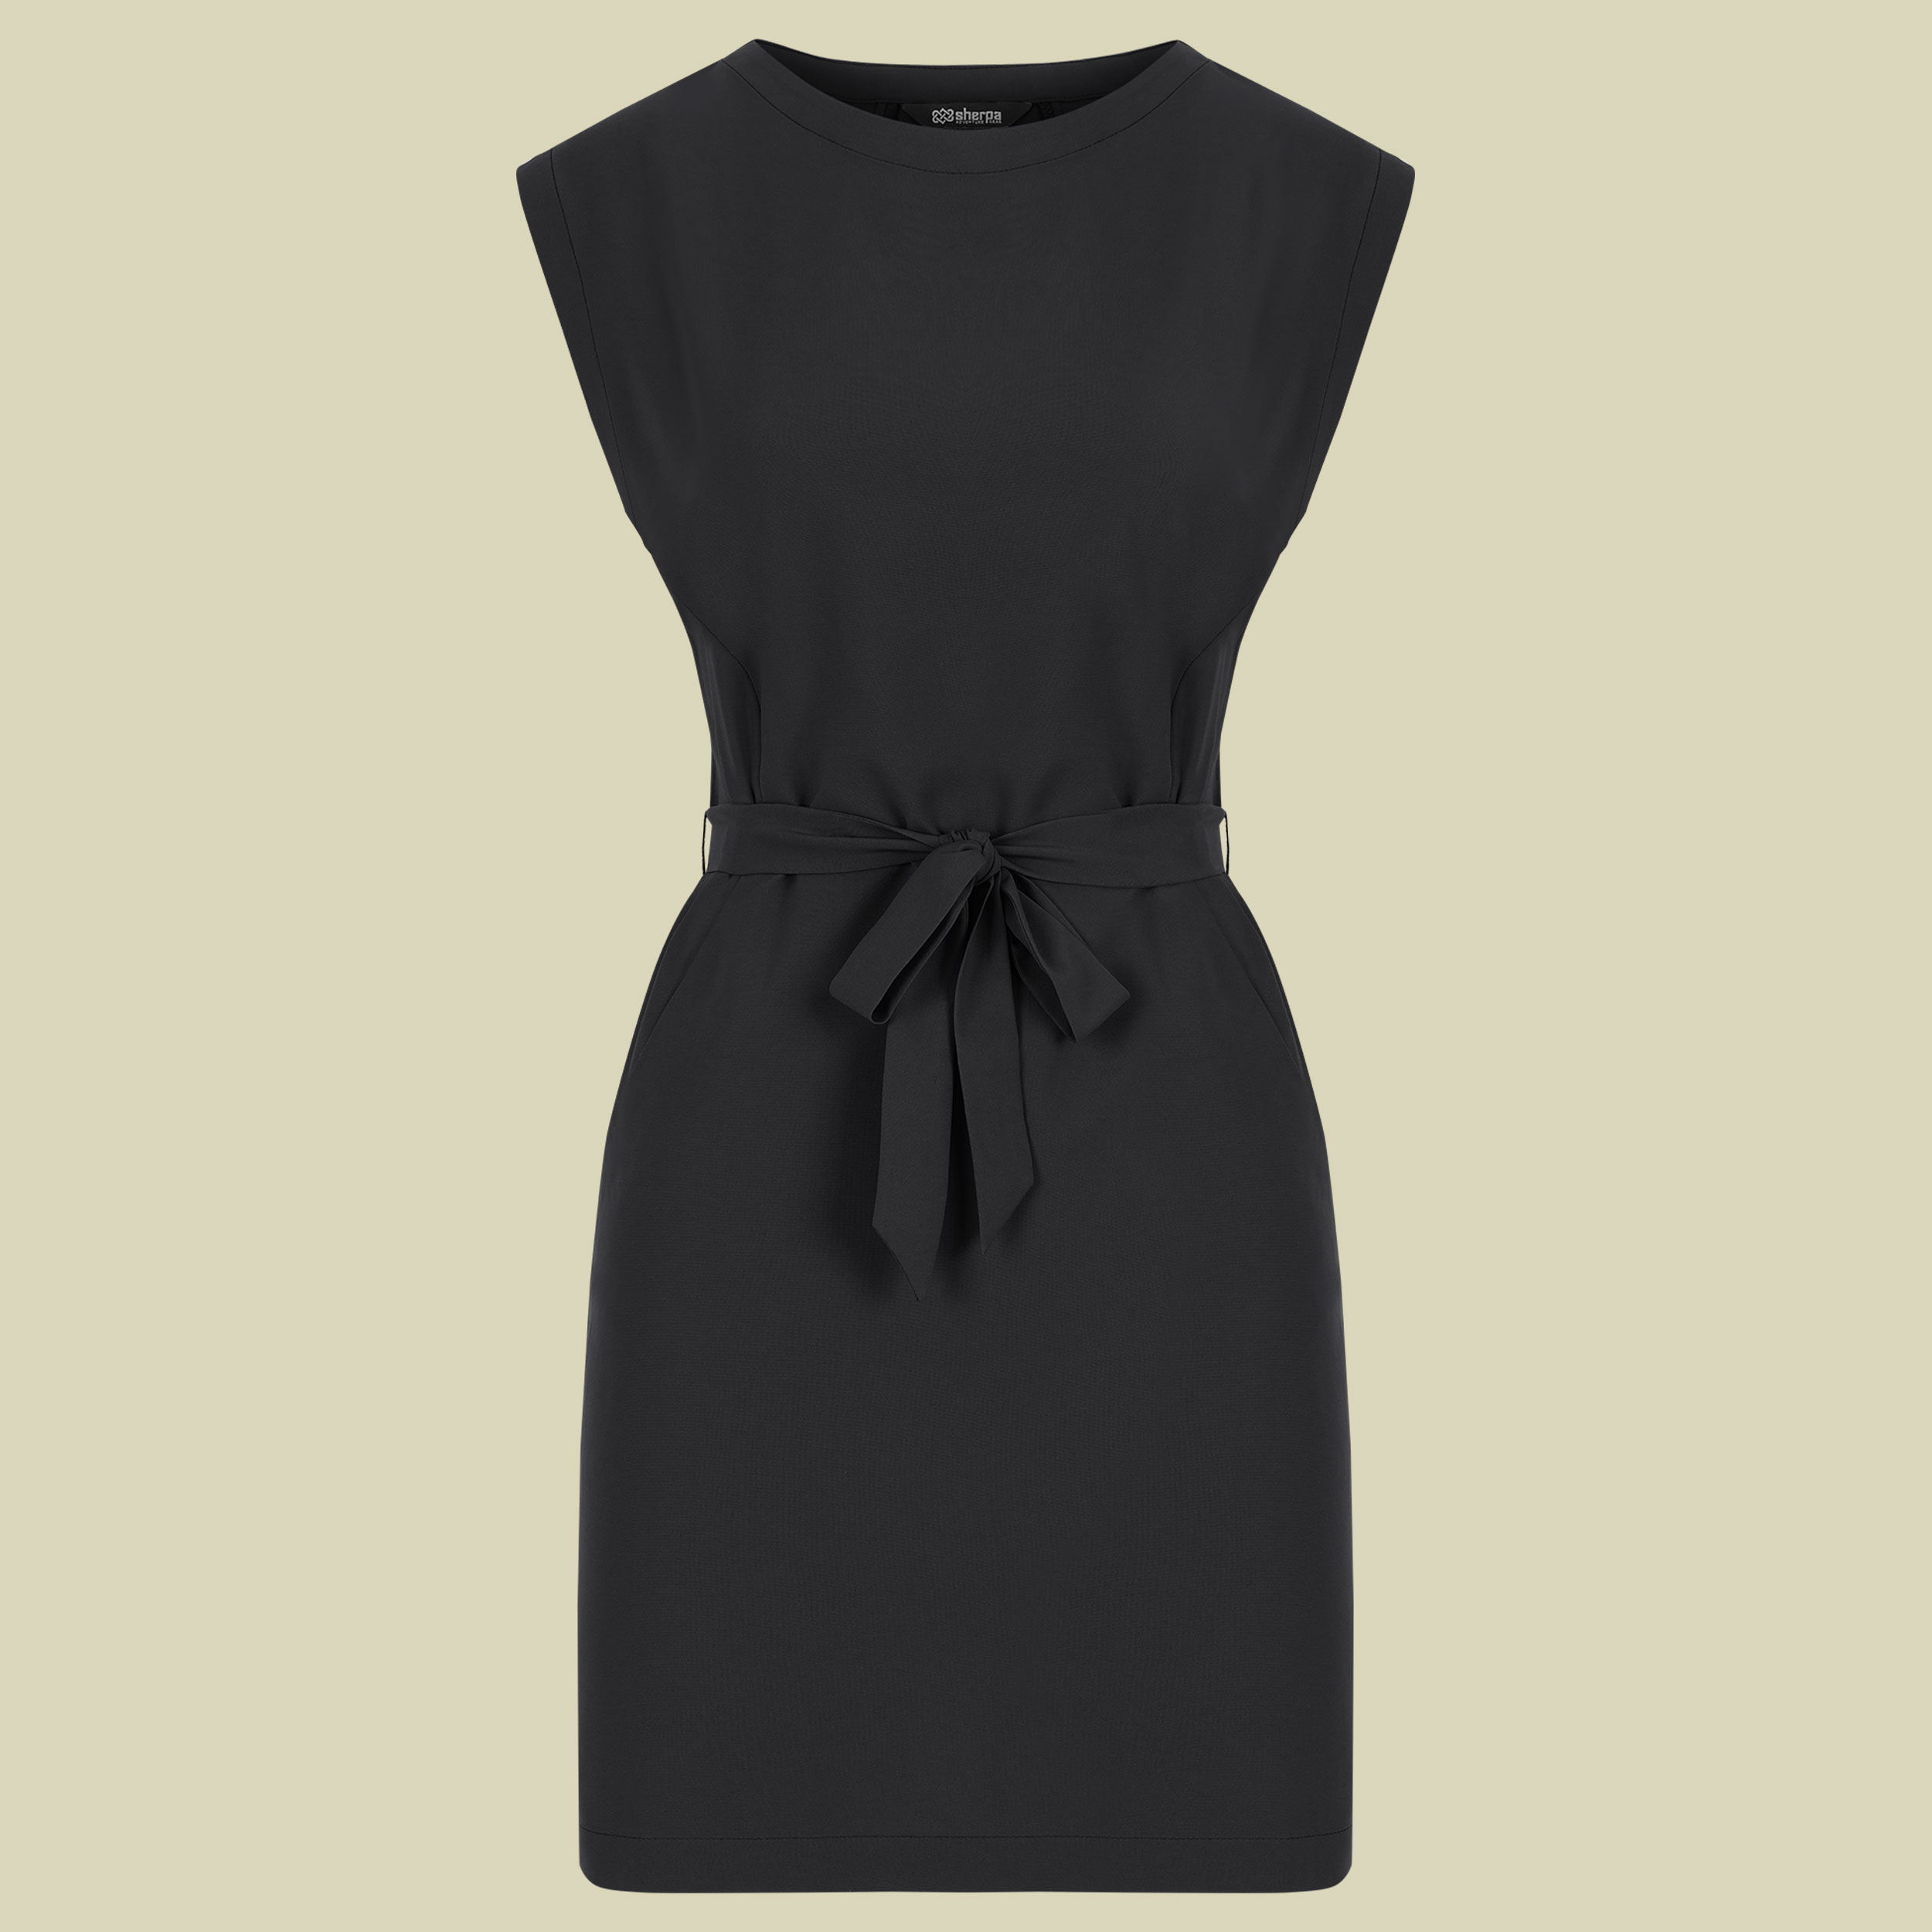 Sajilo Travel Dress XL schwarz - Farbe black